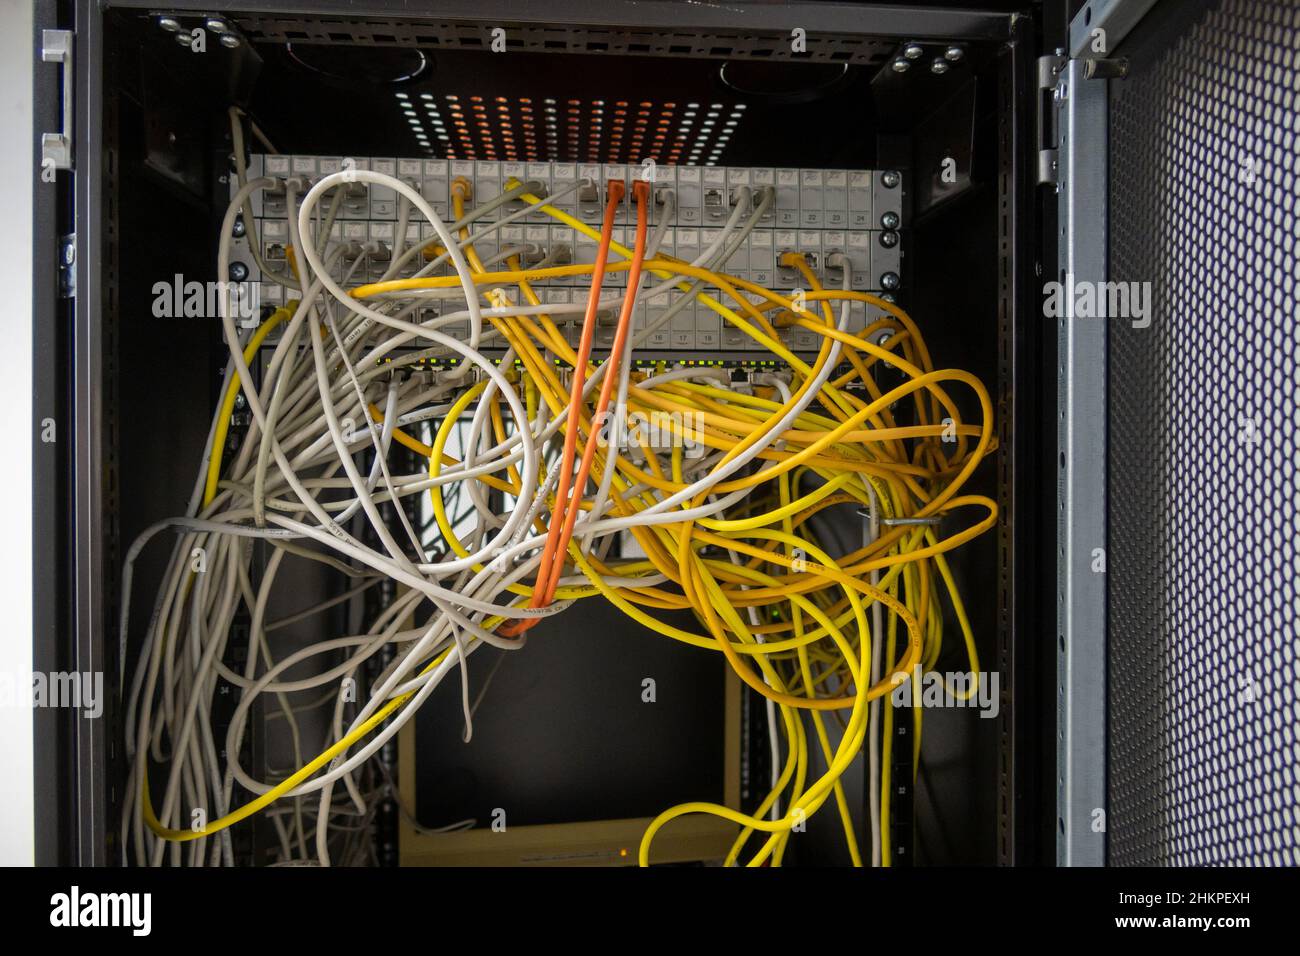 Viele Netzwerkkabel sind in den Serverschrank eingesteckt Stockfotografie -  Alamy